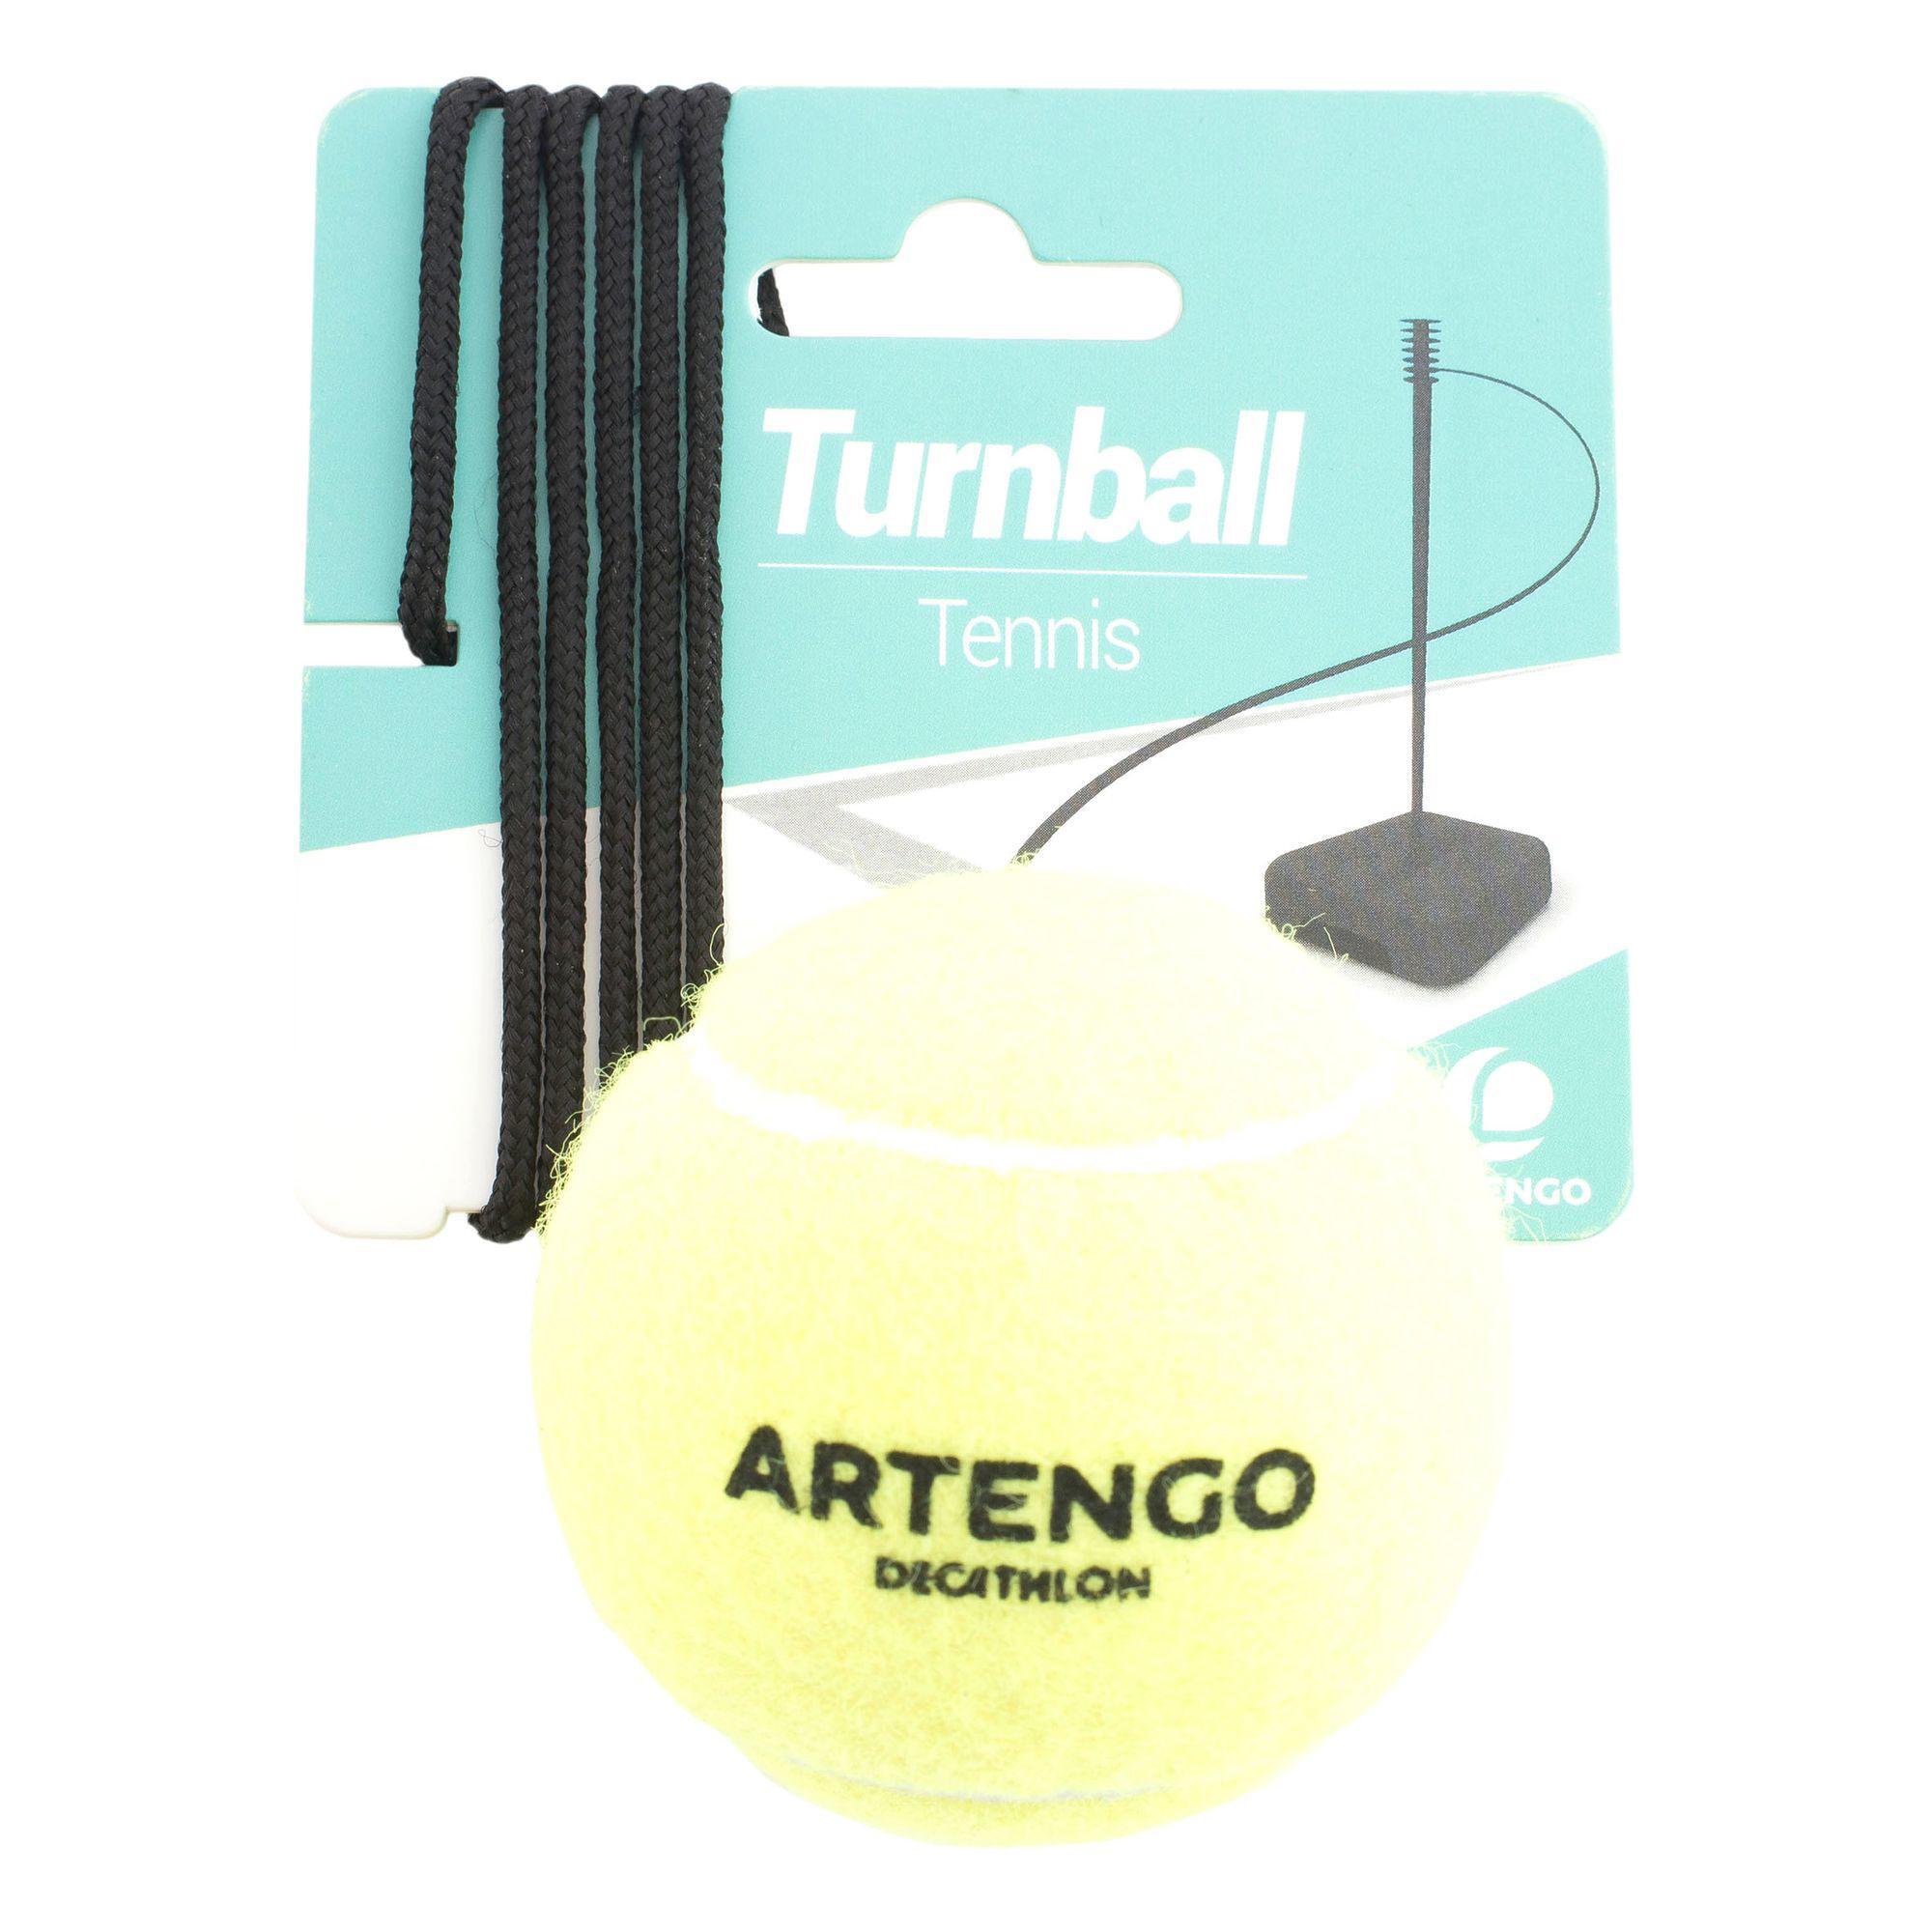 ARTENGO "Turnball Tennis Ball" Speedball Ball